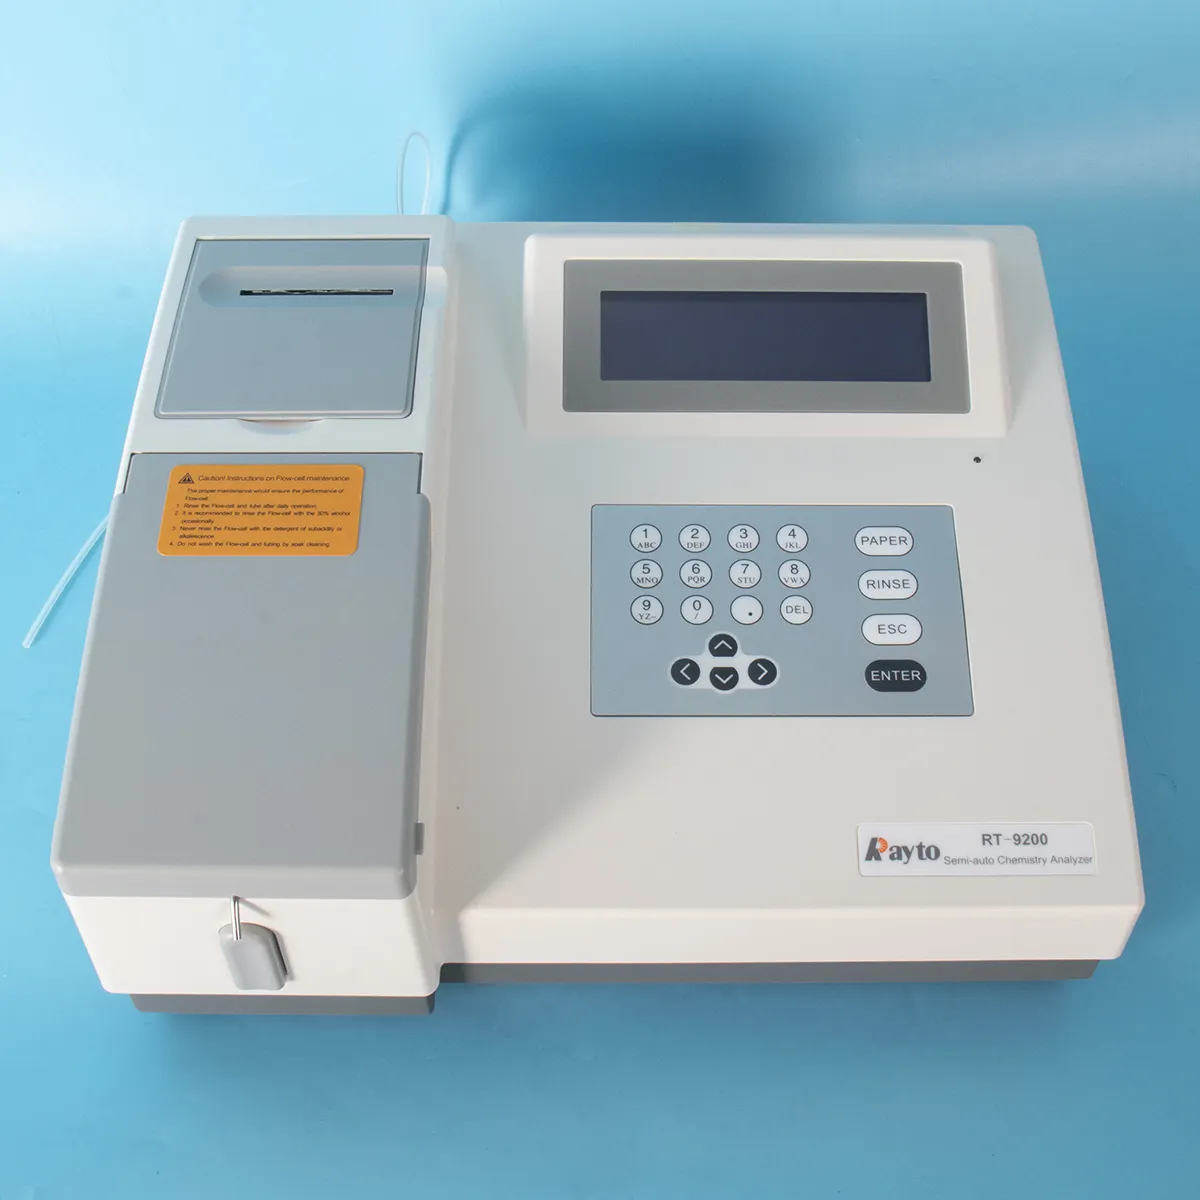 Analizzatore chimico biochimico semiautomatico da laboratorio Rayto RT-9200